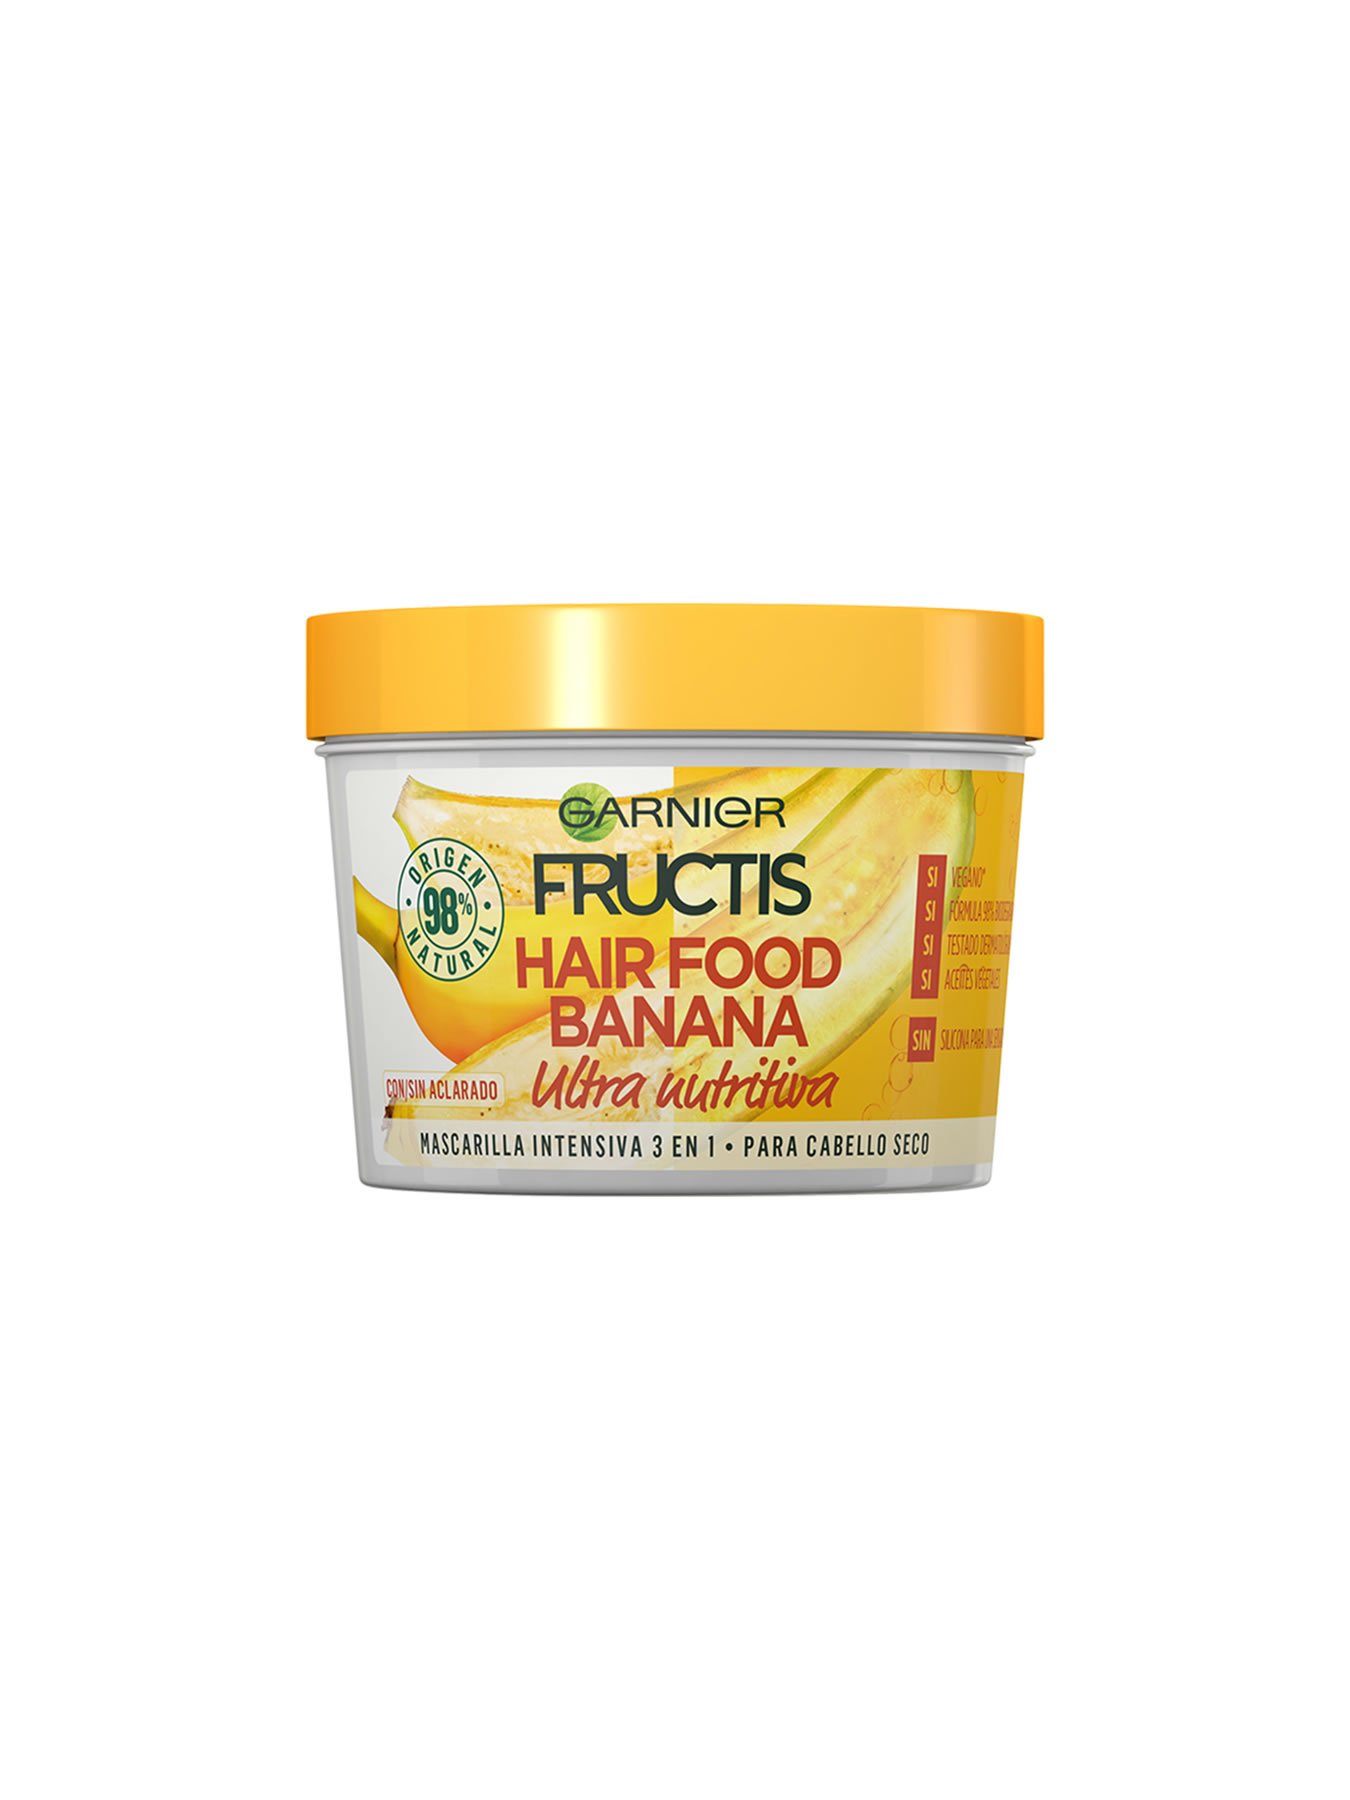 Hair Food Banana: Mascarilla de plátano para el 3 en | Garnier